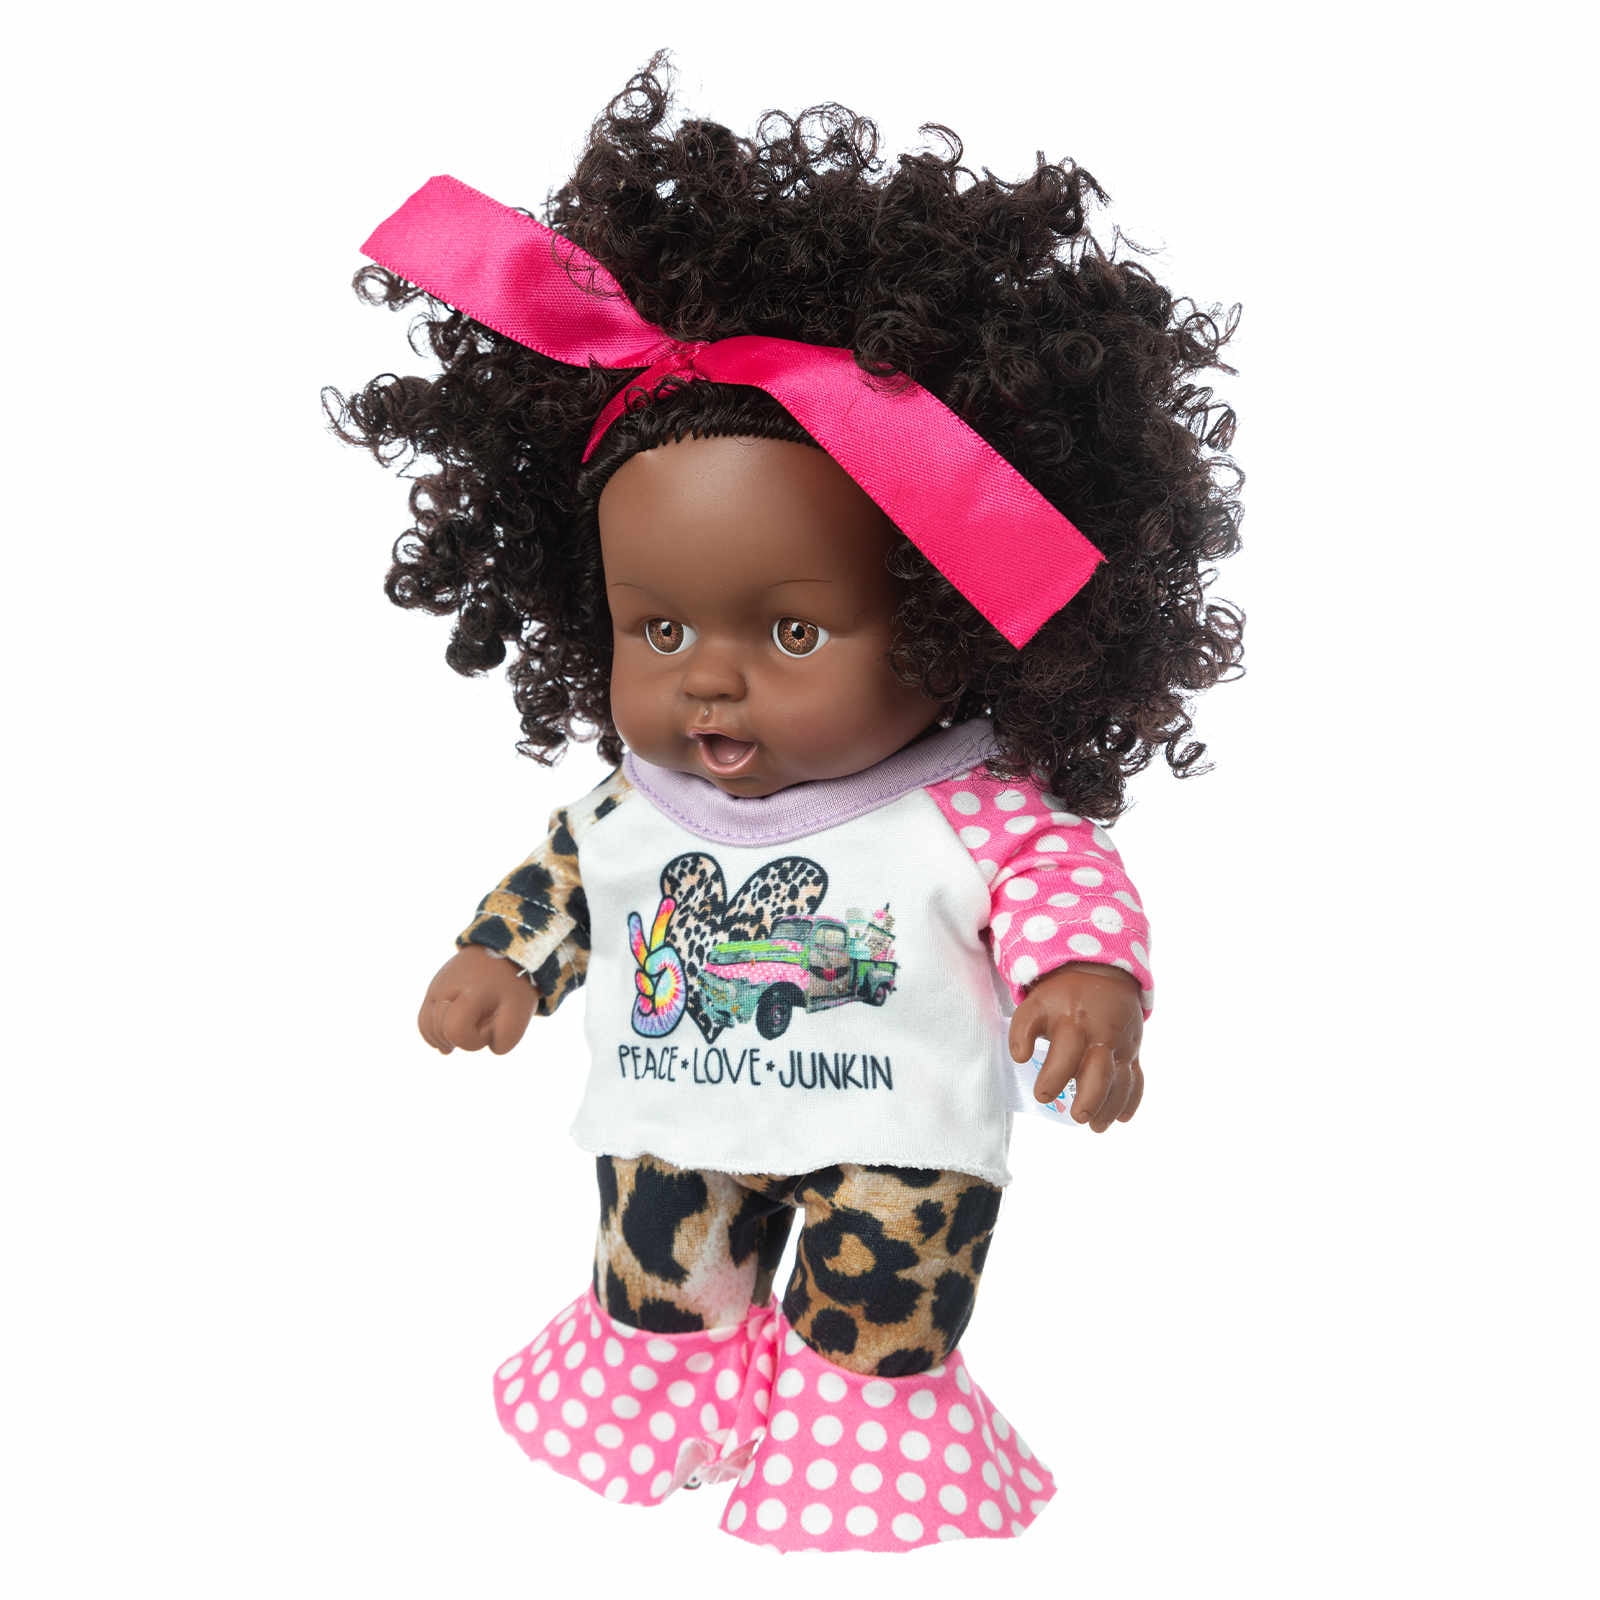  SEWACC 100pcs Black Dolls Plastic Doll Black Dolls